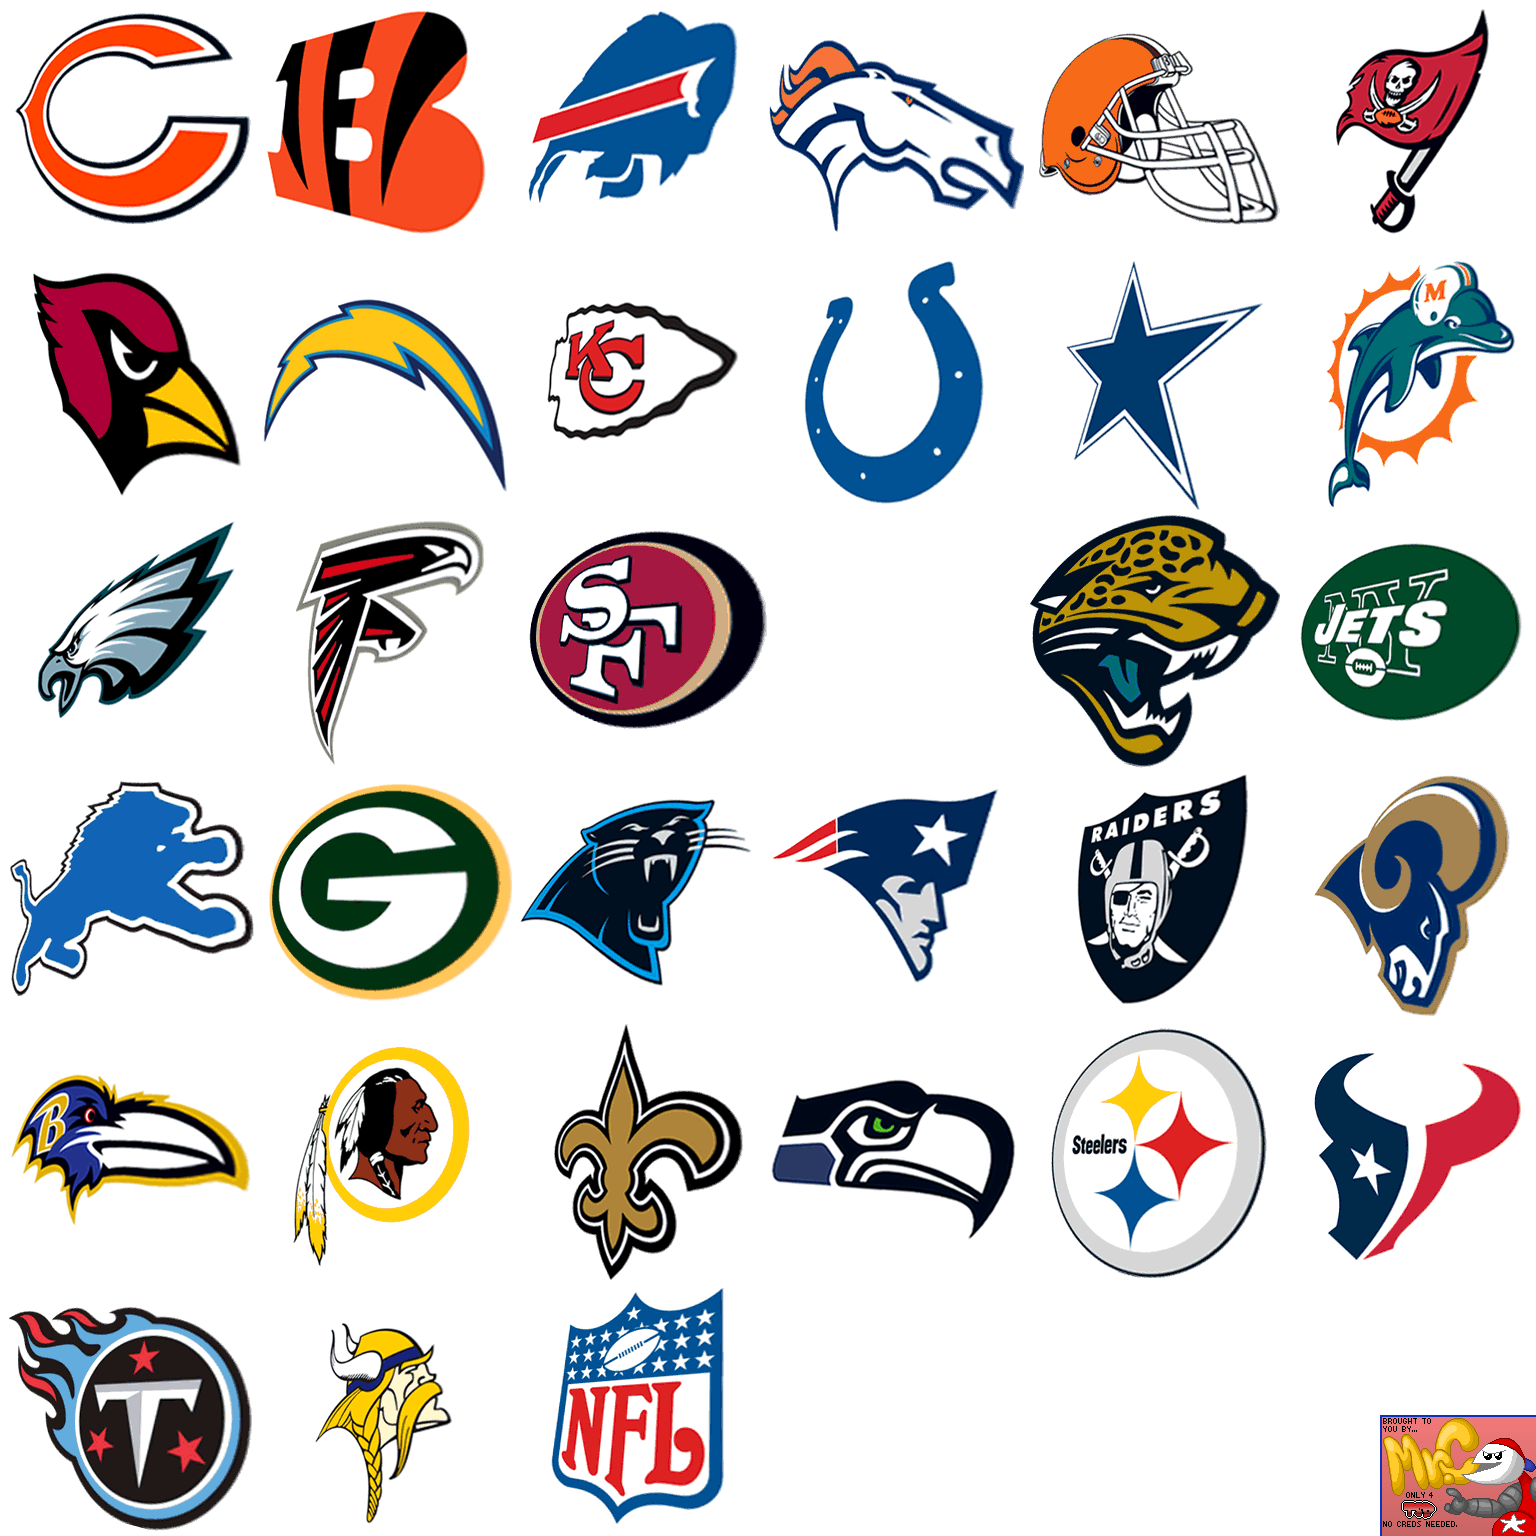 Wii - Madden NFL 08 - Team Logos (Main Menu) - The Spriters Resource